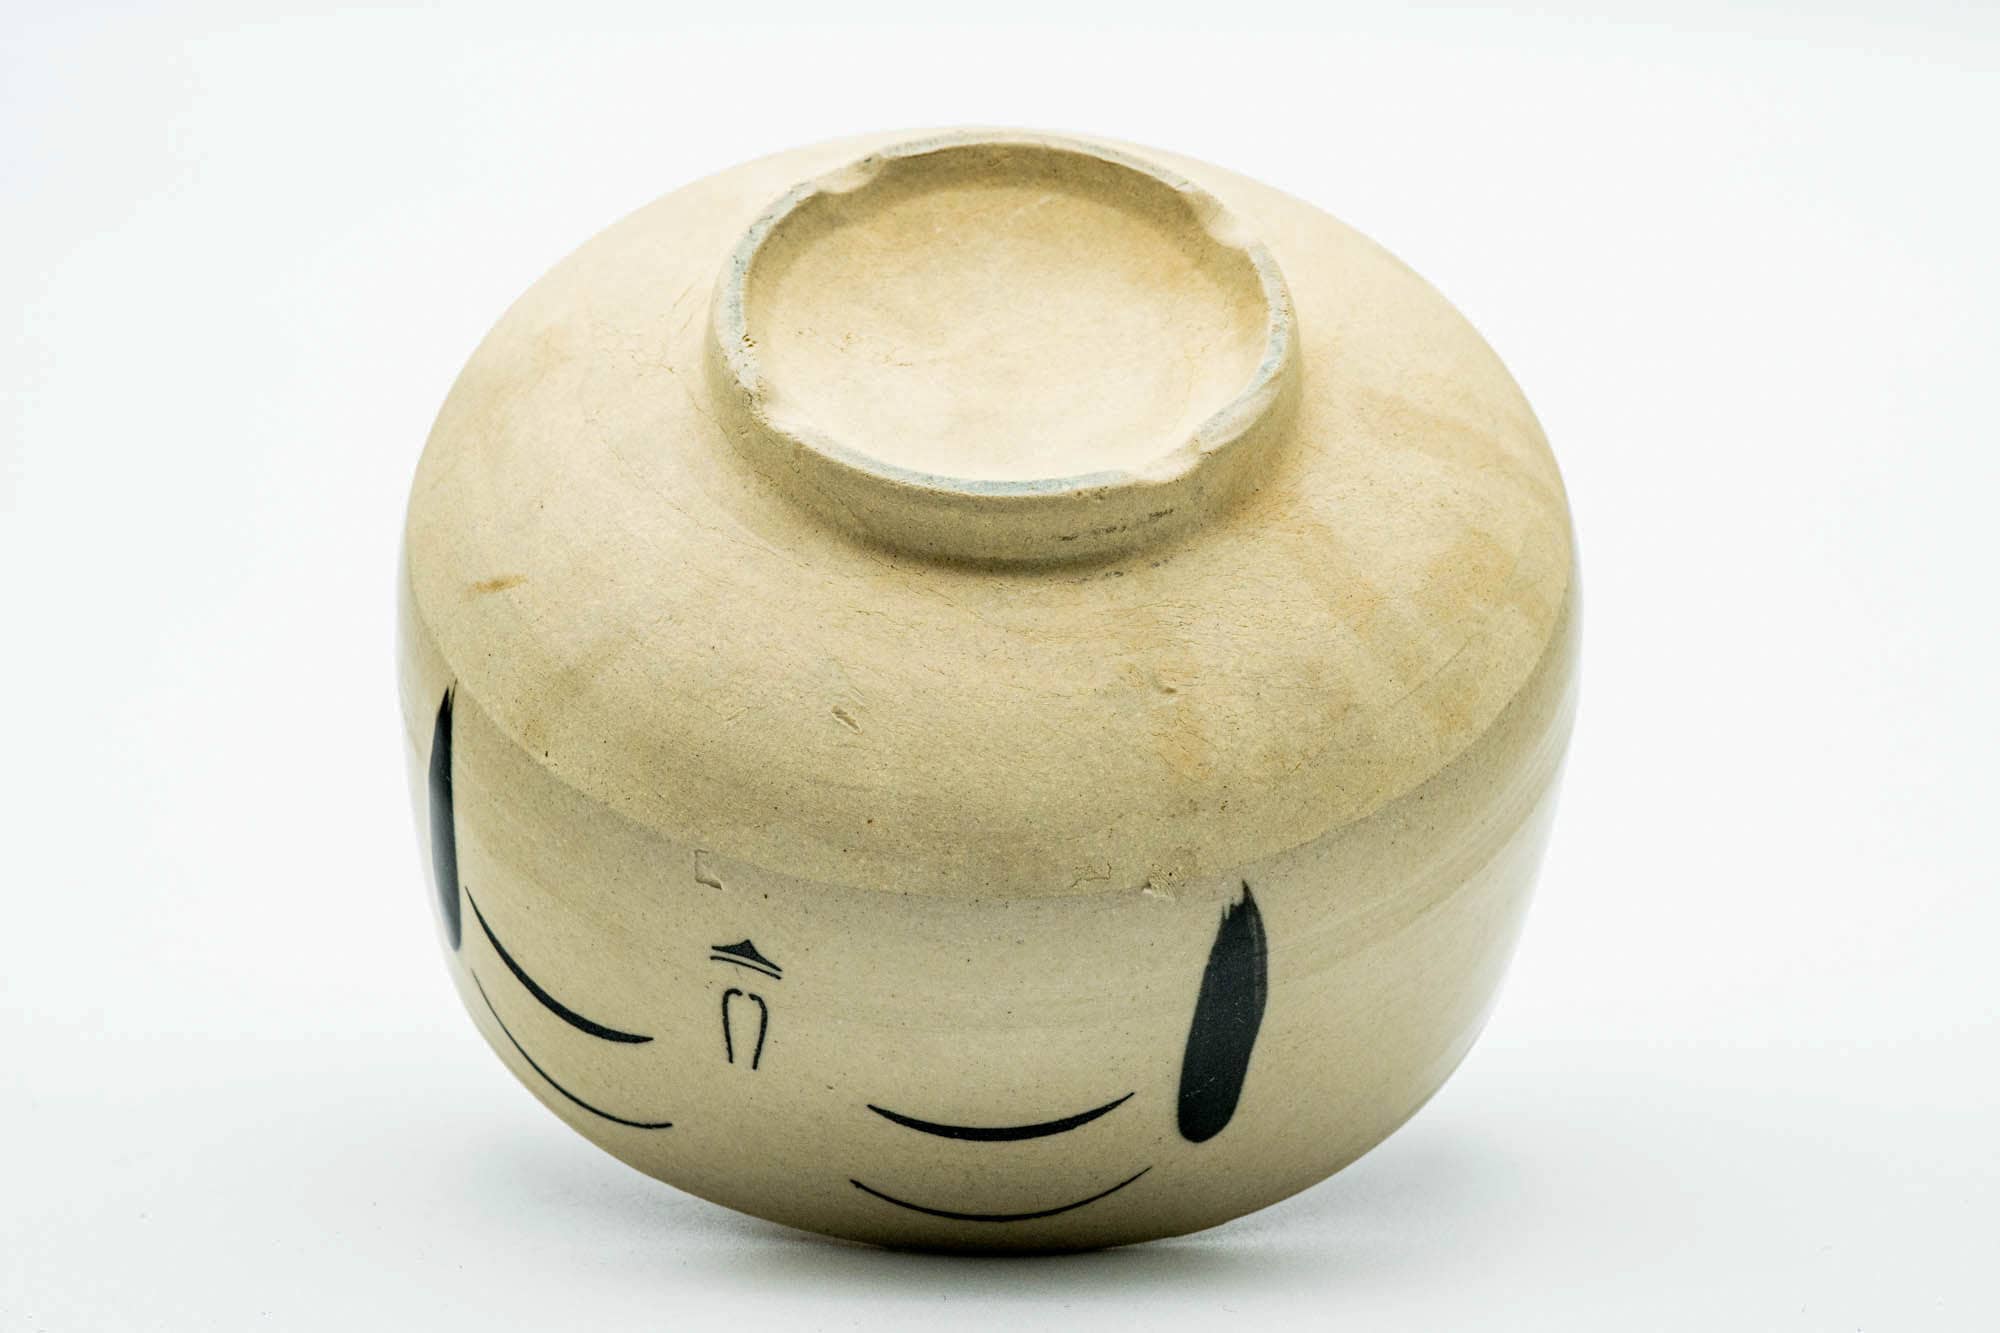 Japanese Matcha Bowl - Smiling Face Wan-nari Chawan - 300ml